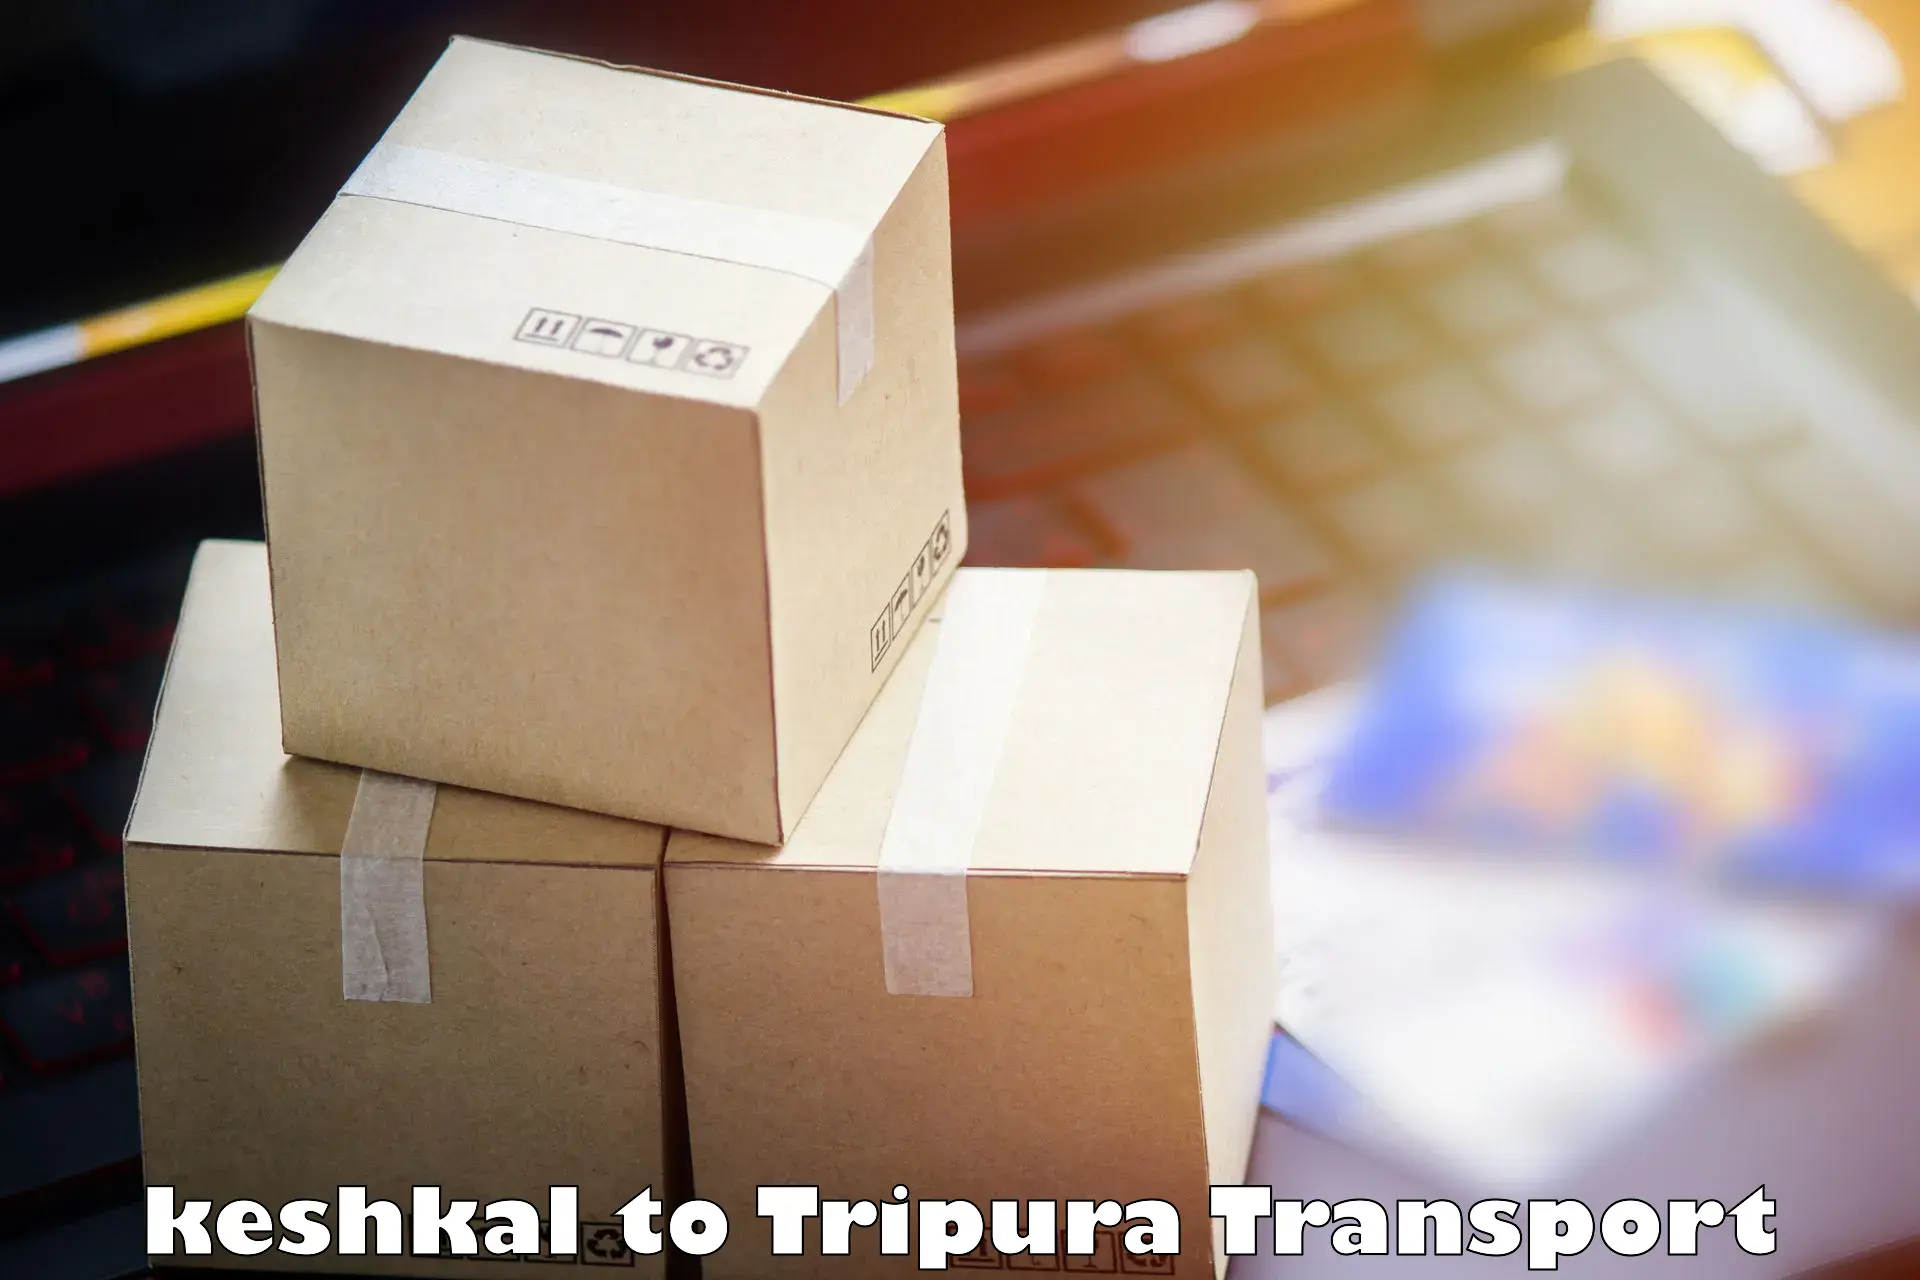 Logistics transportation services keshkal to Tripura